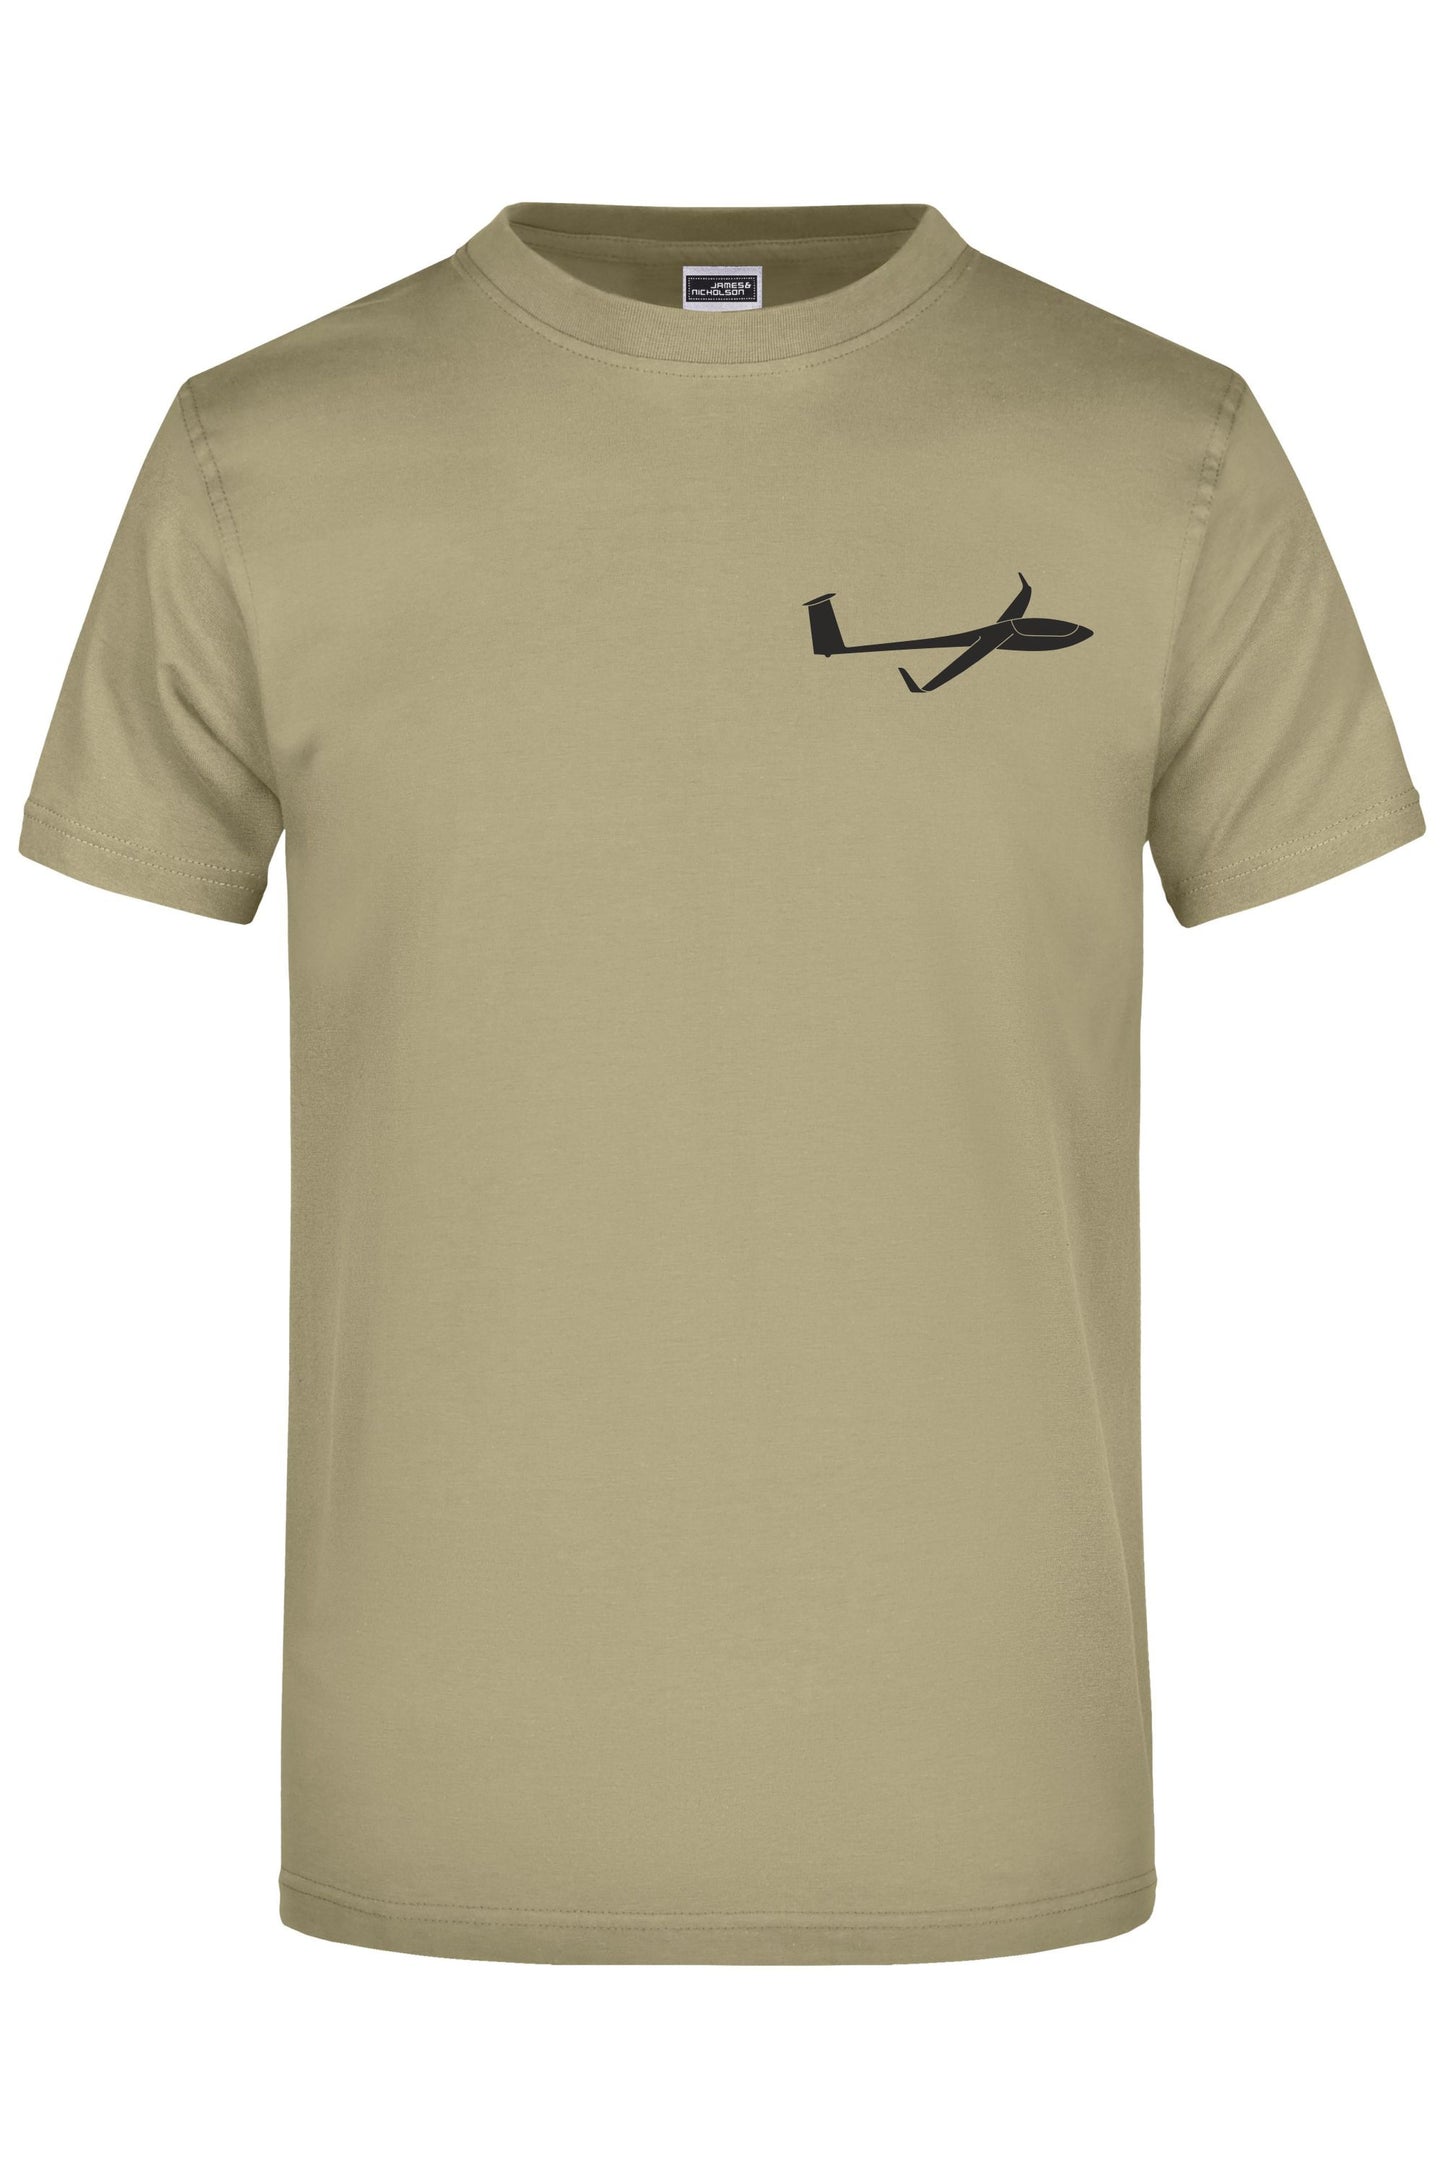 Premium T-Shirt mit deinem Segelflugzeug